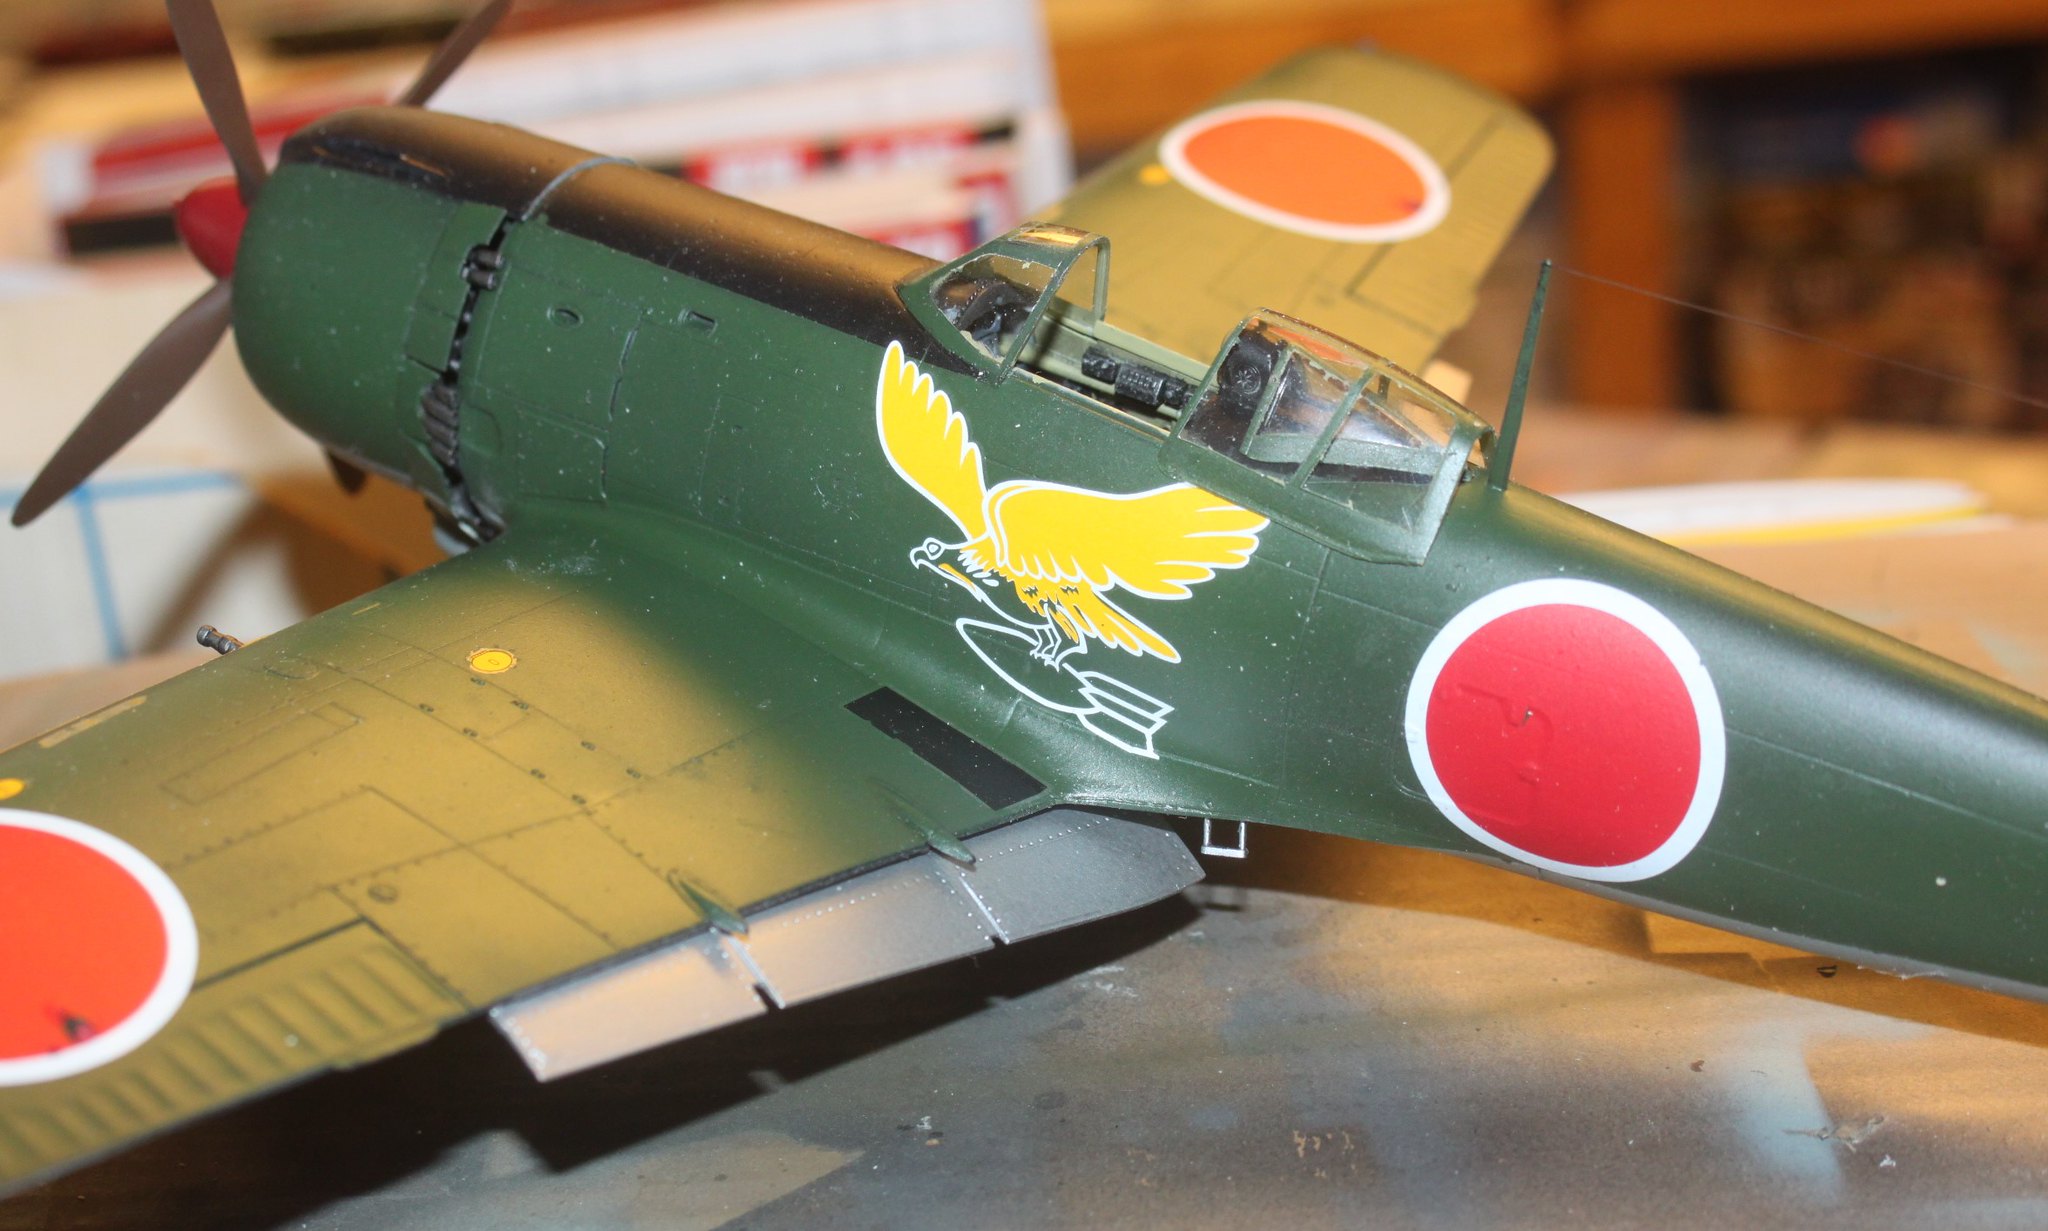 Nakajima Ki-84 Hayate (Frank), Hasgawa 1/32 53605406147_be7ad9e0eb_k